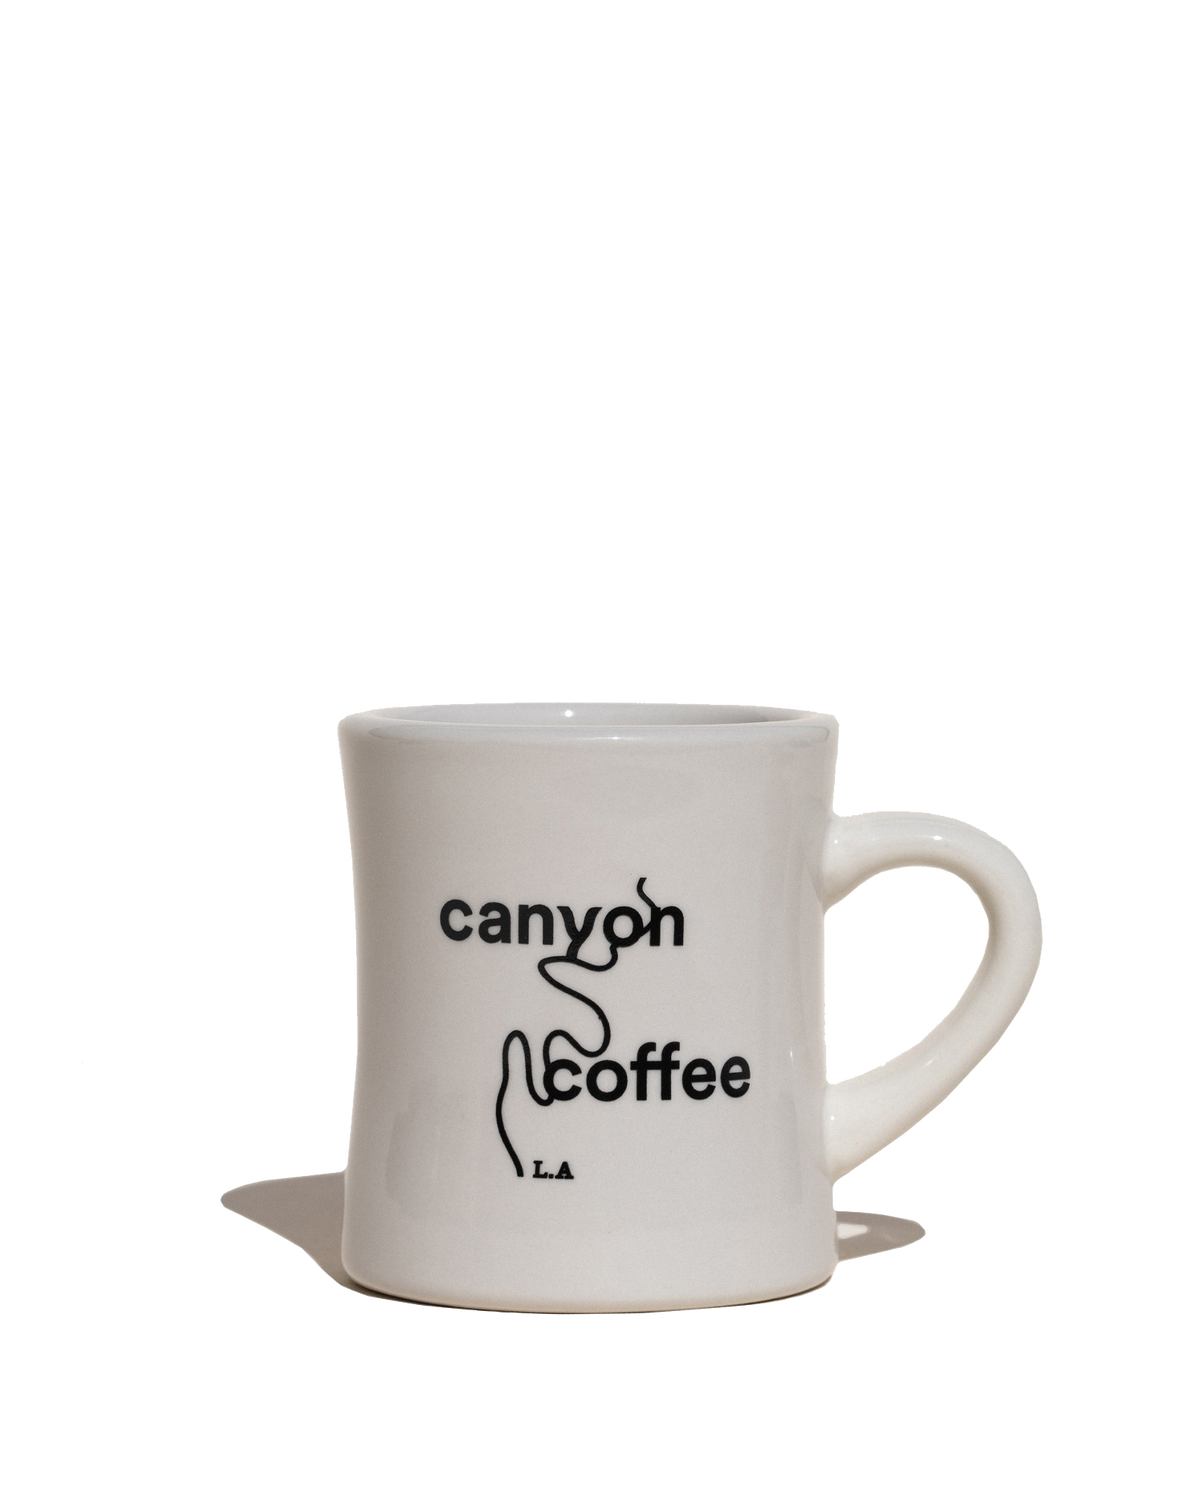 The Canyon Coffee Diner Mug